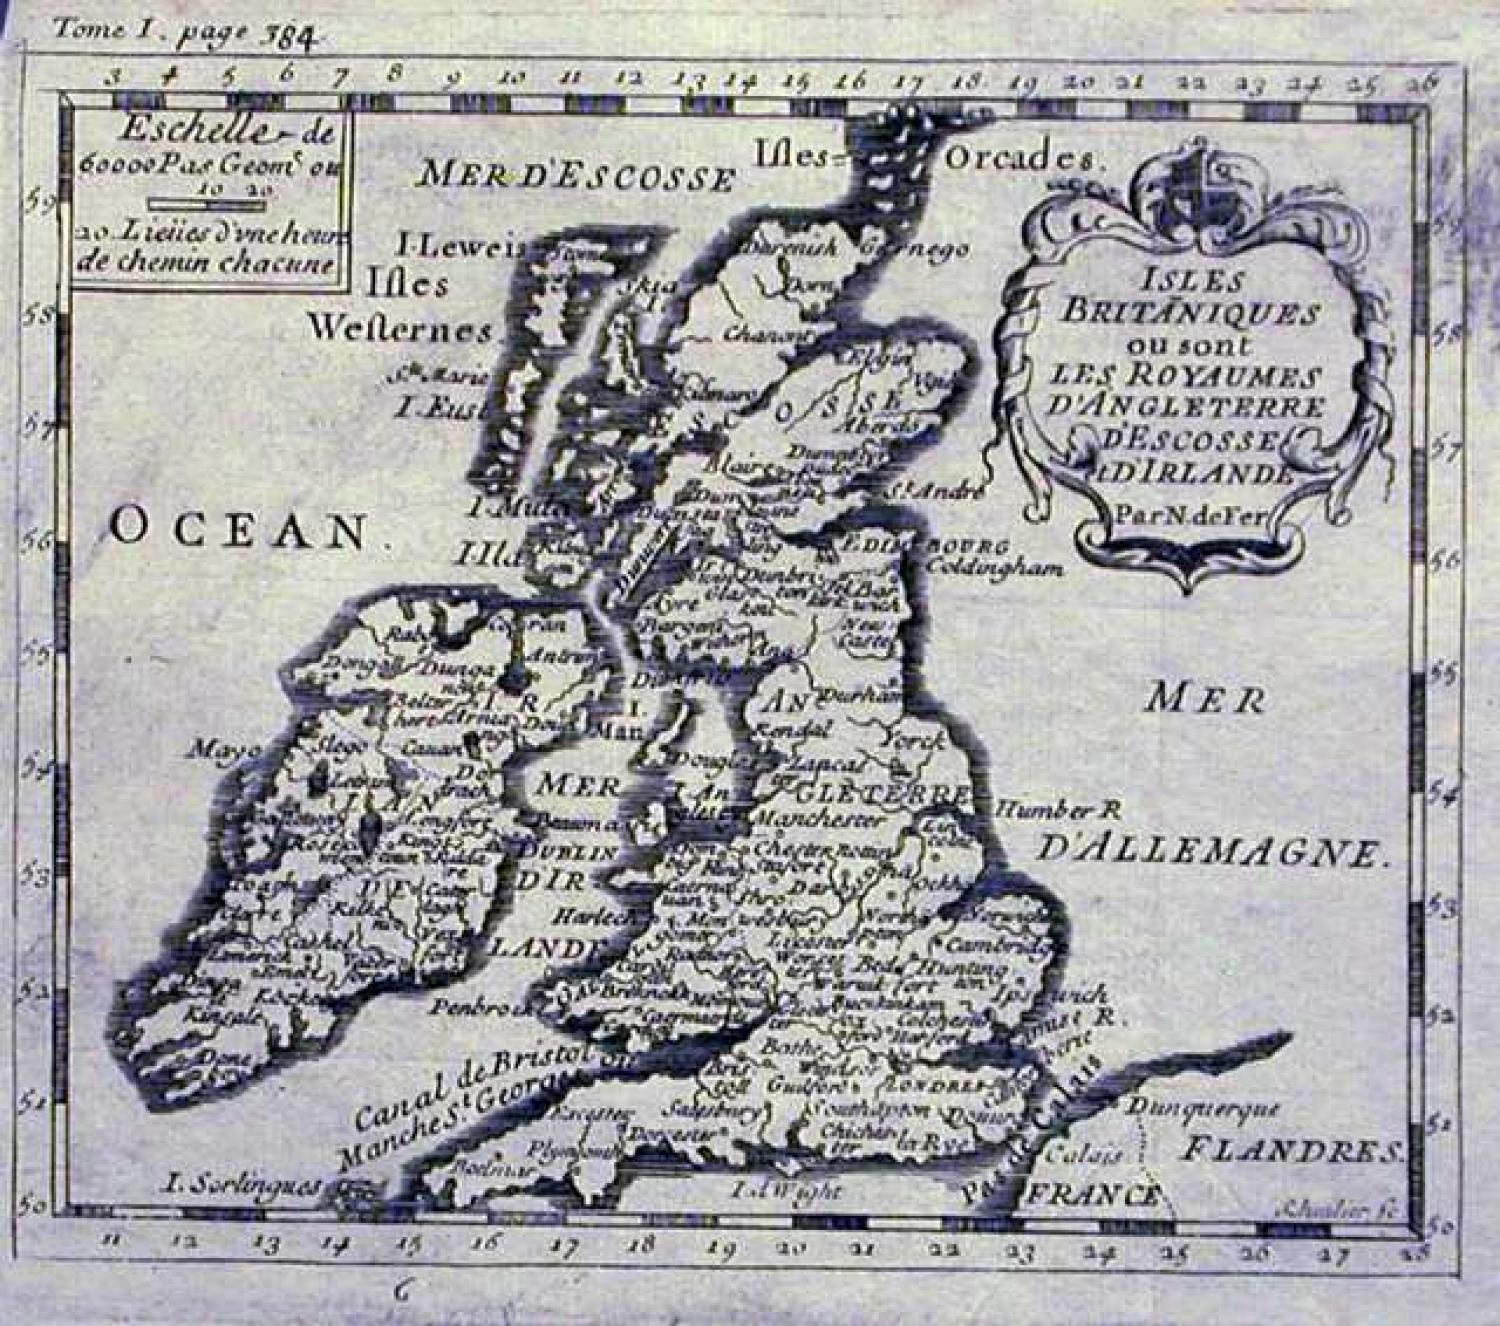 SOLD Isles Britaniques ou sont Les Royaumes D'Angleterre, D'Ecosse et D'Irlande